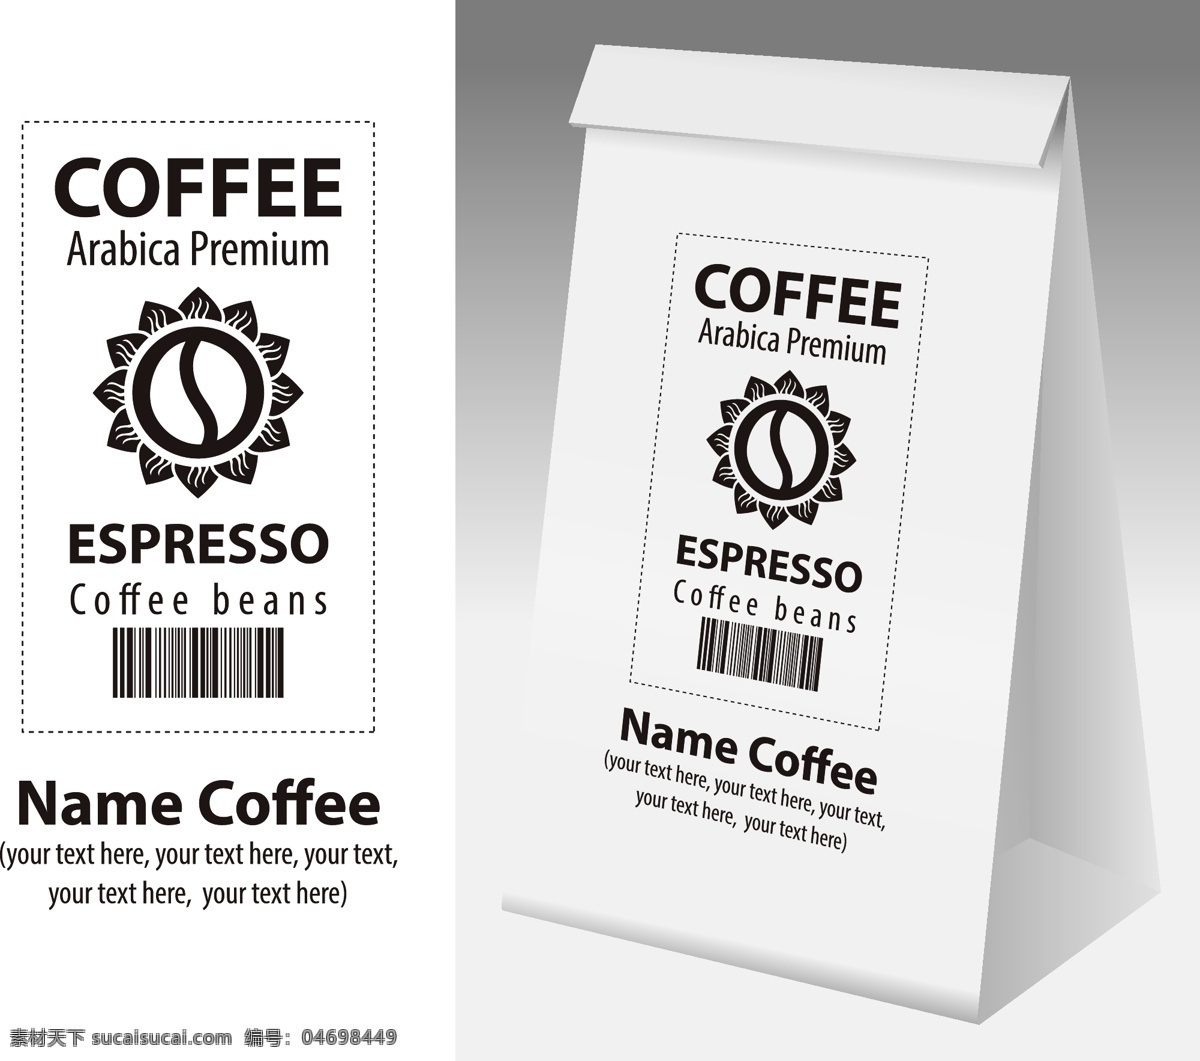 咖啡包装 咖啡袋 咖啡制品包装 咖啡包装袋 咖啡打包袋 咖啡外卖袋 咖啡 咖啡豆 展开图 纸袋 一次性纸袋 咖啡店 环保袋